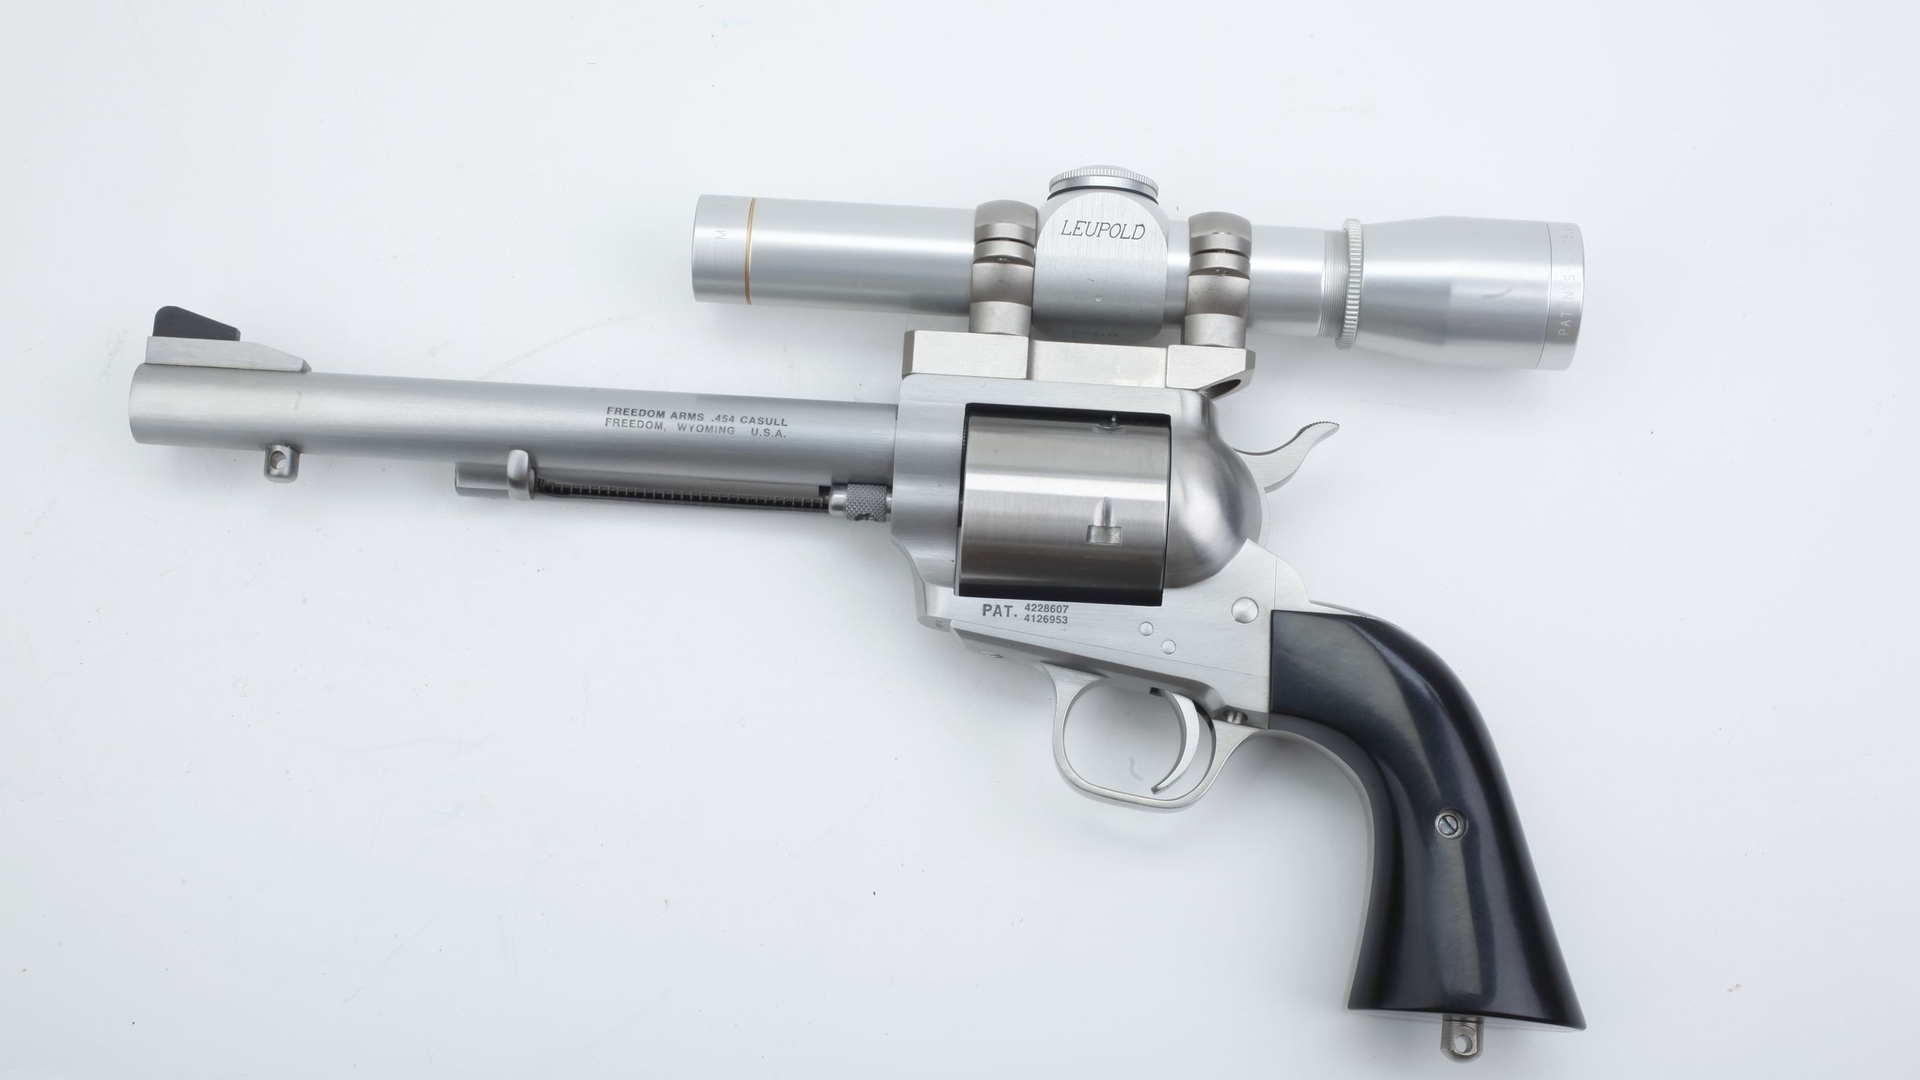 Скачать обои бесплатно Оружие, Револьвер Freedom Arms 454 Casull картинка на рабочий стол ПК